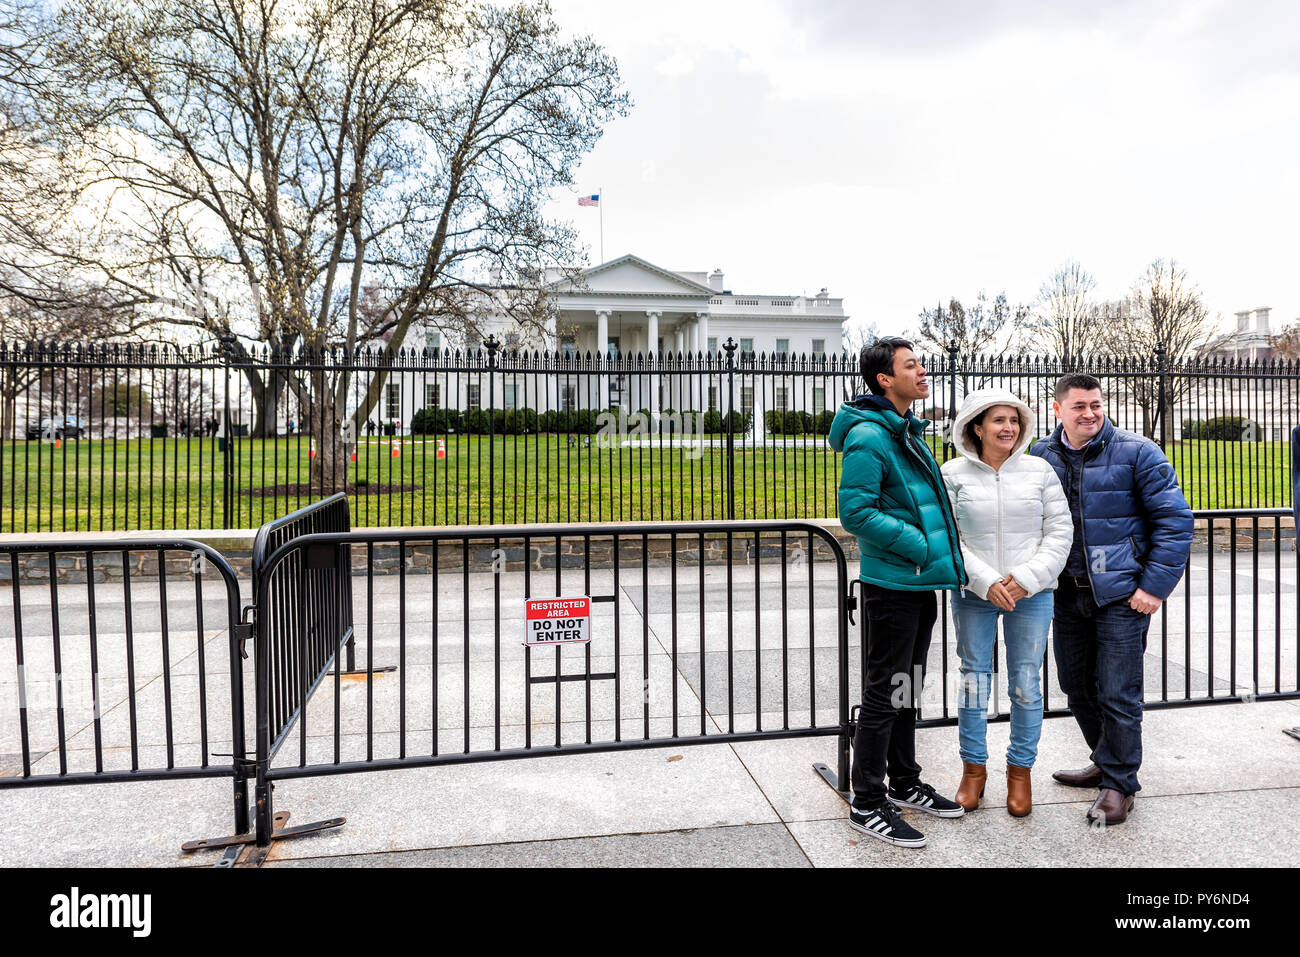 Washington DC, USA - März 9, 2018: Familie Menschen Bilder aufnehmen im White House Präsident Gebäude in der Hauptstadt der Vereinigten Staaten im Kalten Winter Stockfoto